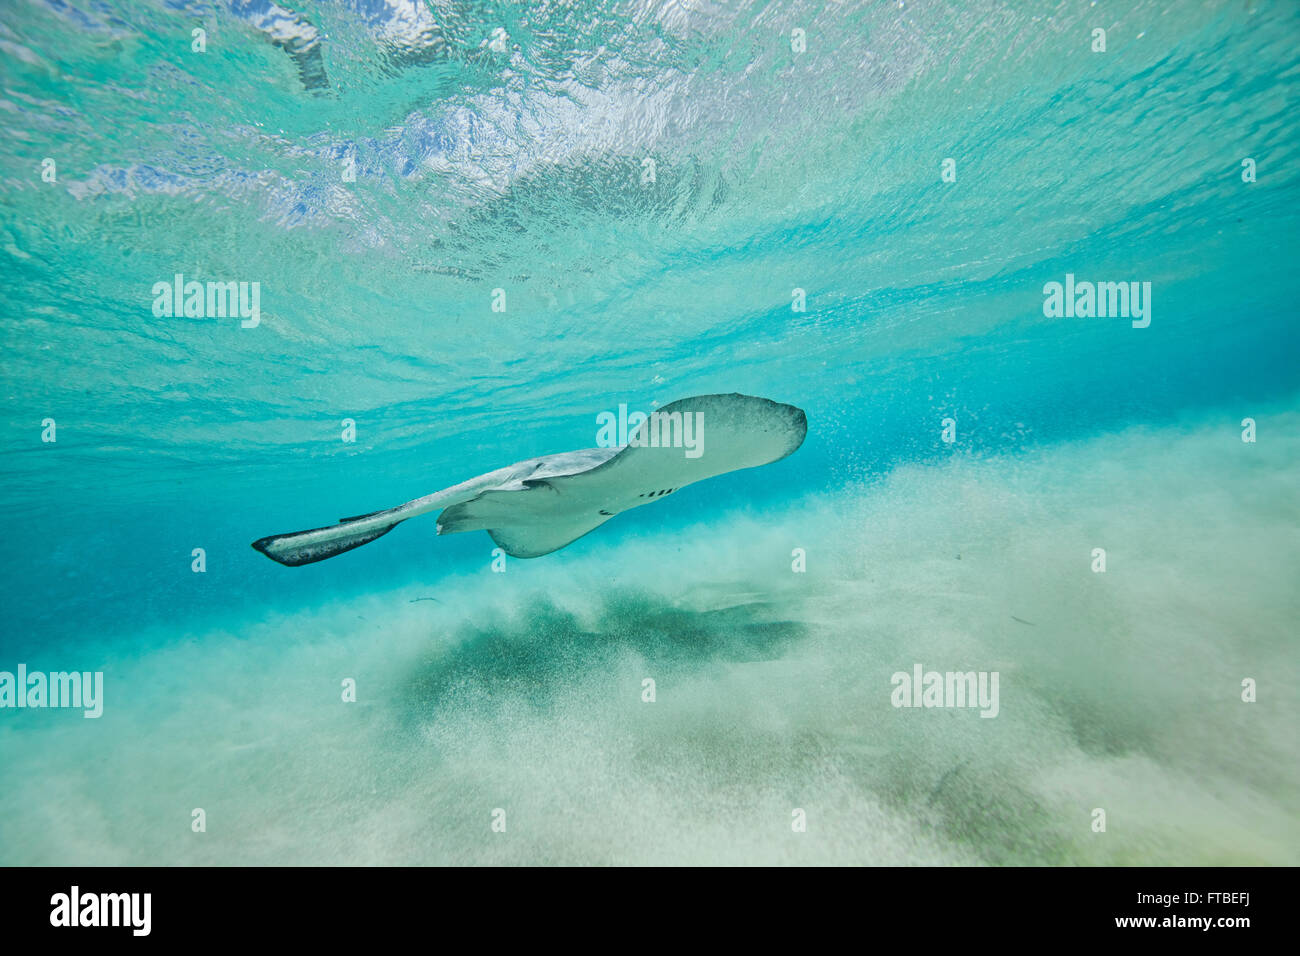 Le Sud du géant Stingray natation le long de la plage de fond avec les vagues des coups le sable avec une réflexion sur la surface Banque D'Images